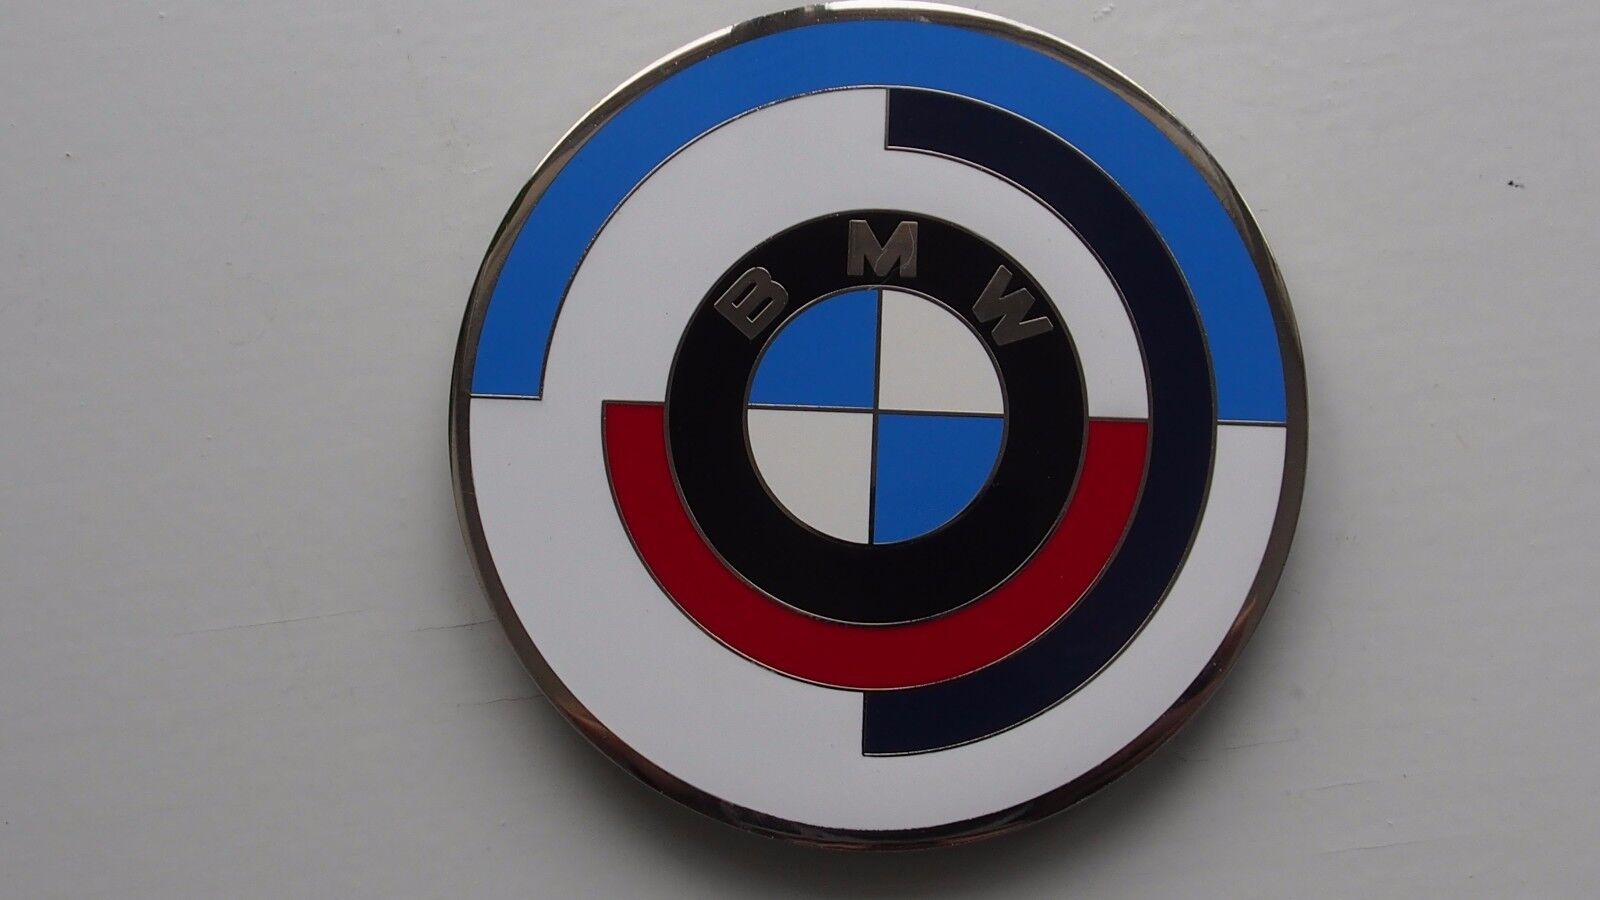 Vintage BMW M sport  motor cycle bike emblem badge - BMW motorrad Plakette